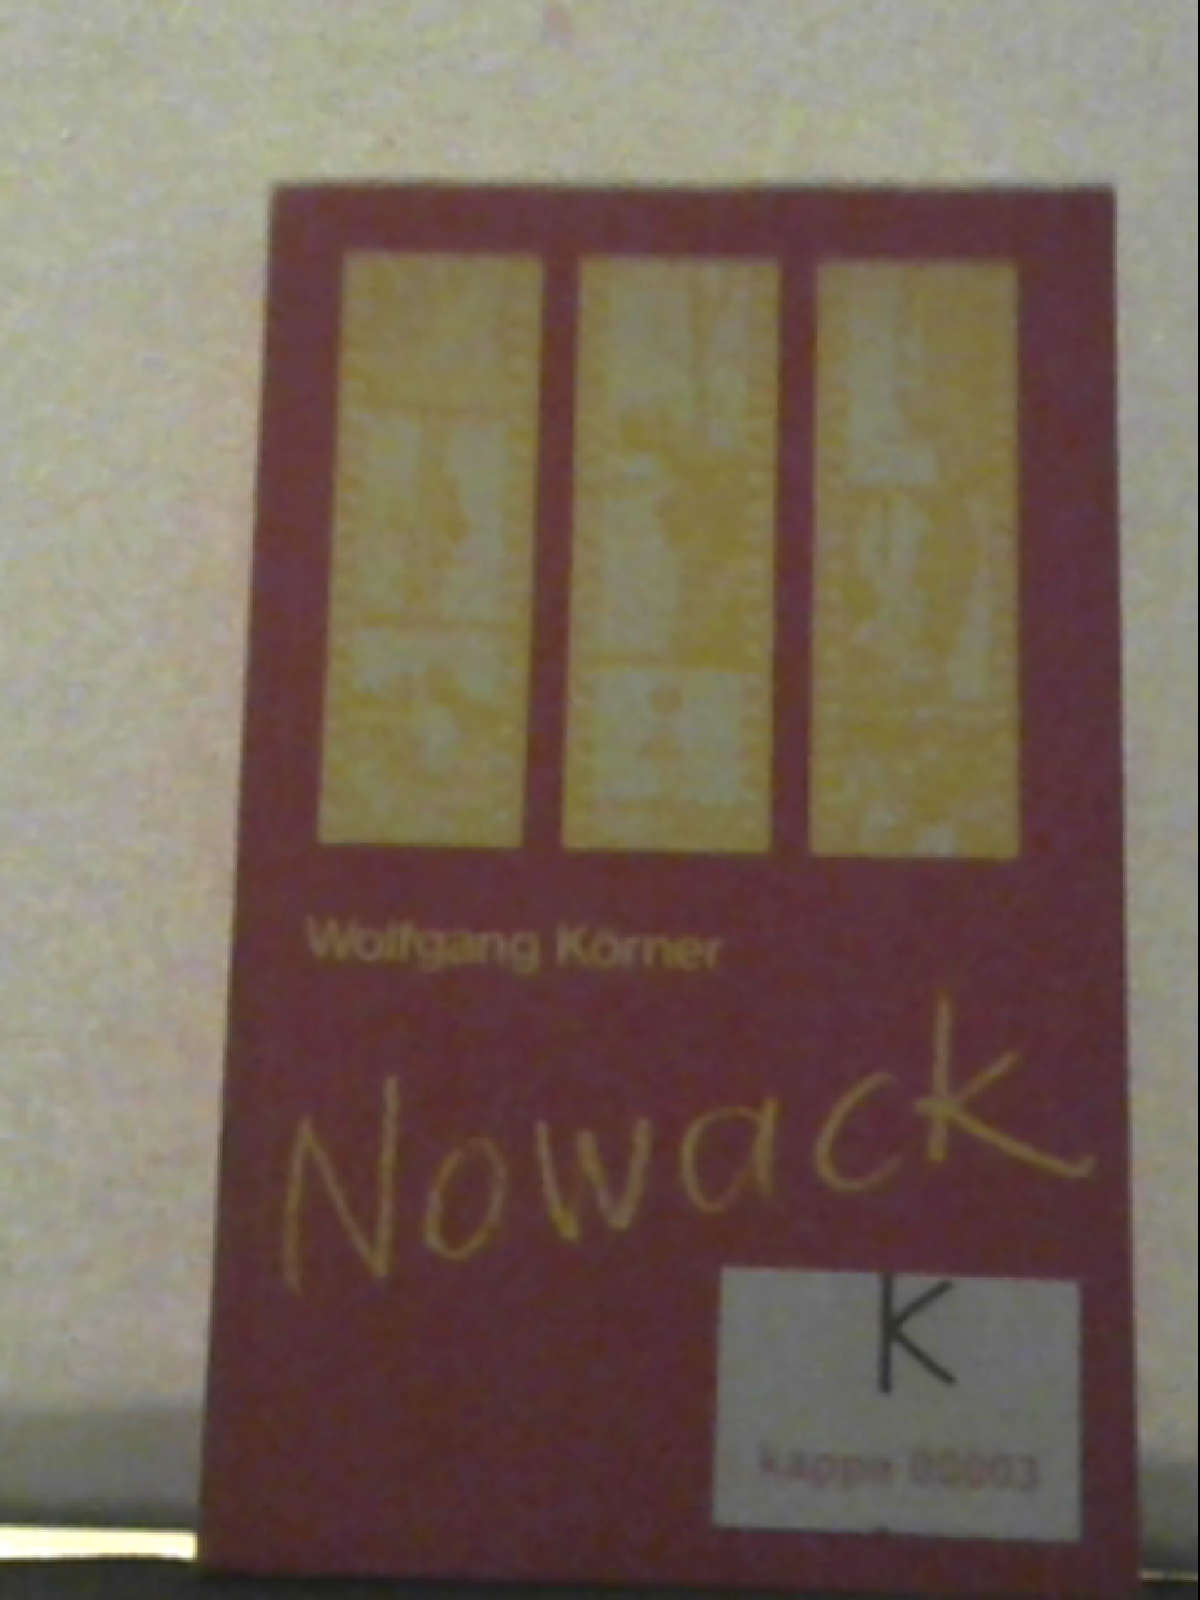 Nowack - Wolfgang, Körner,